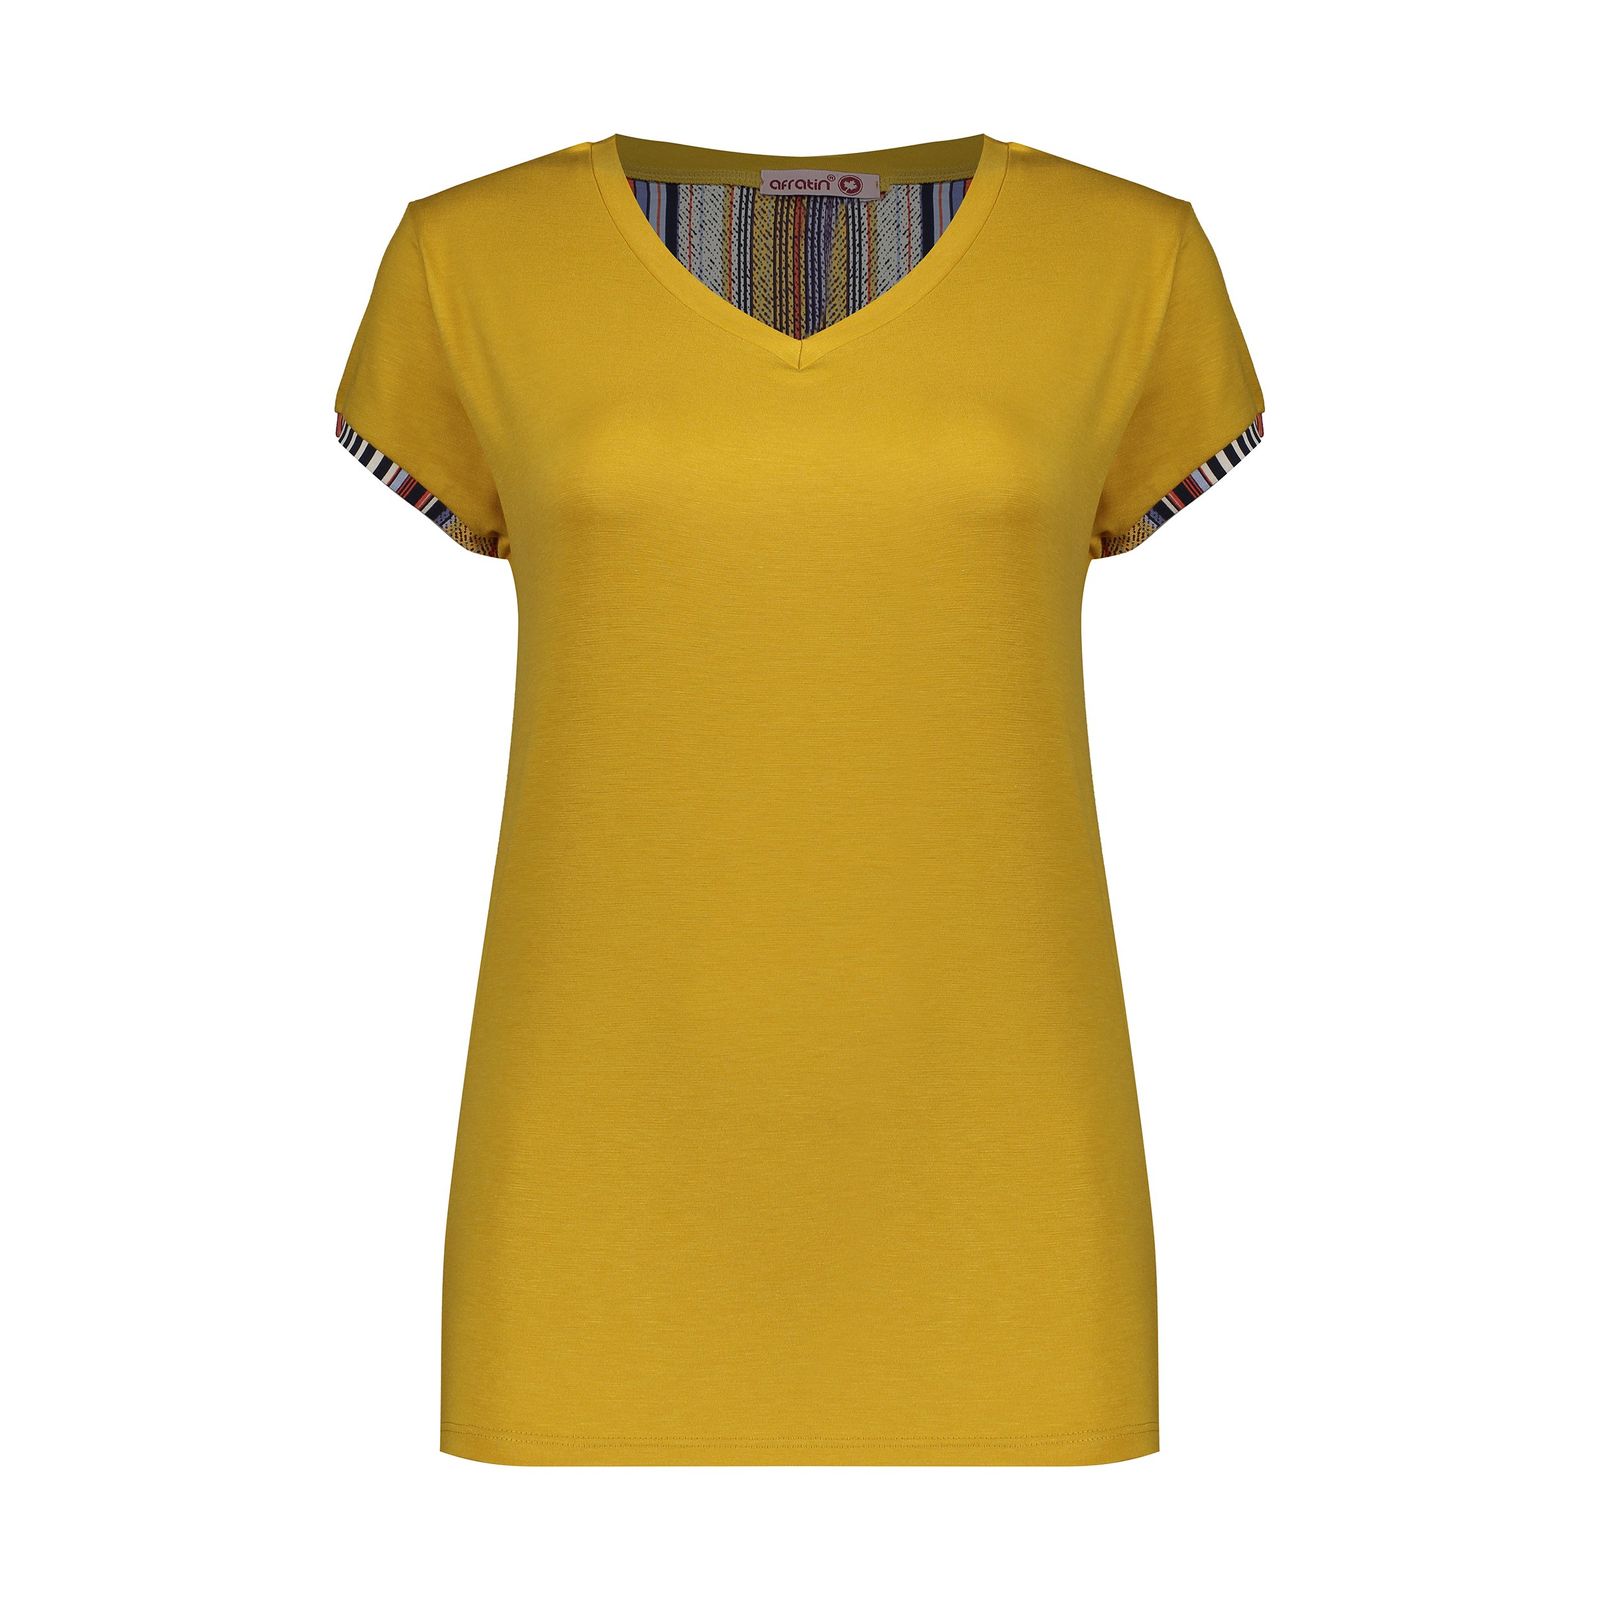 تی شرت آستین کوتاه زنانه افراتین مدل 6572 رنگ خردلی -  - 1